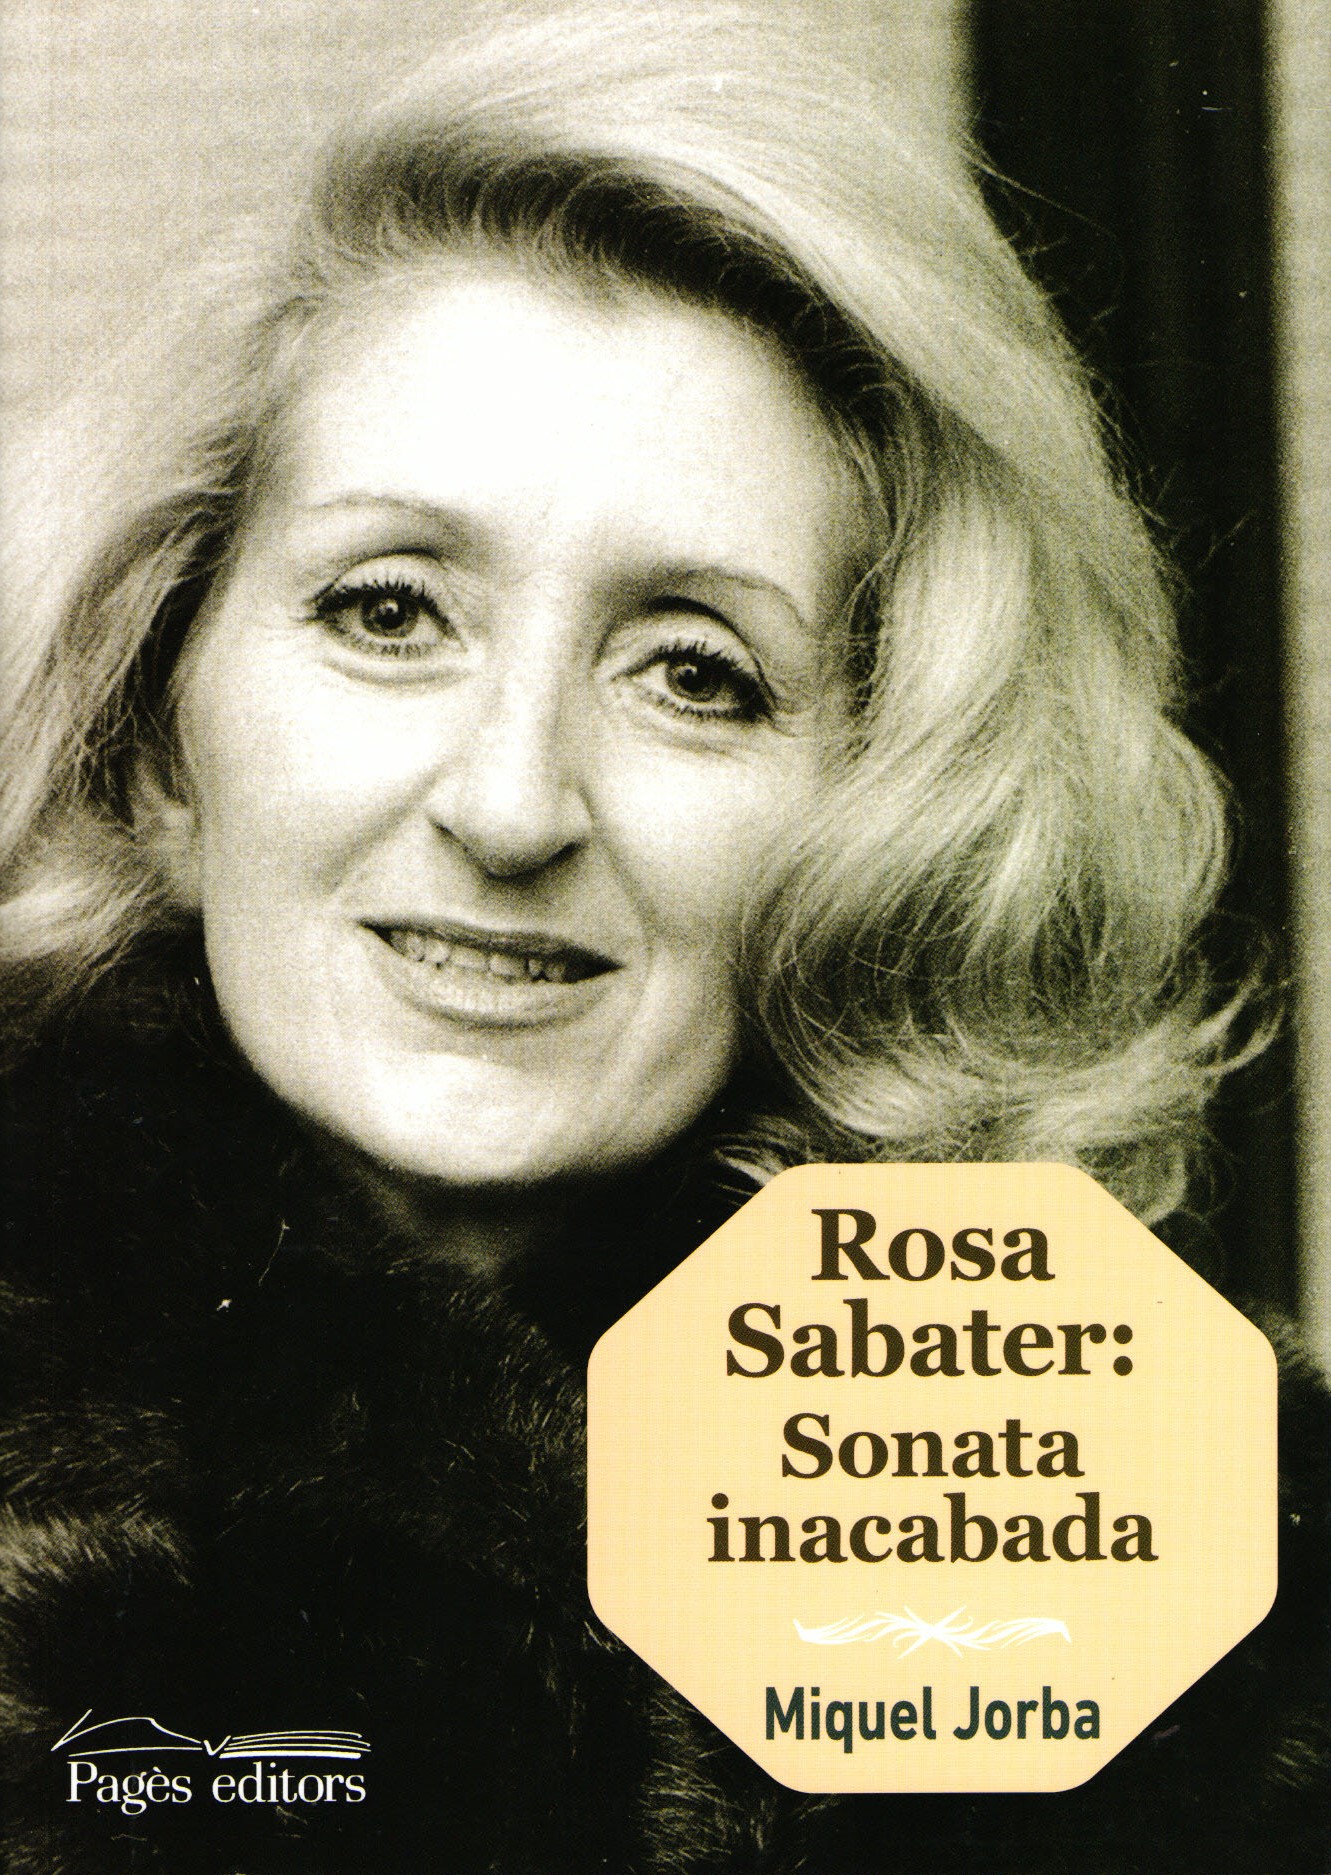 Rosa Sabater: Sonata inacabada